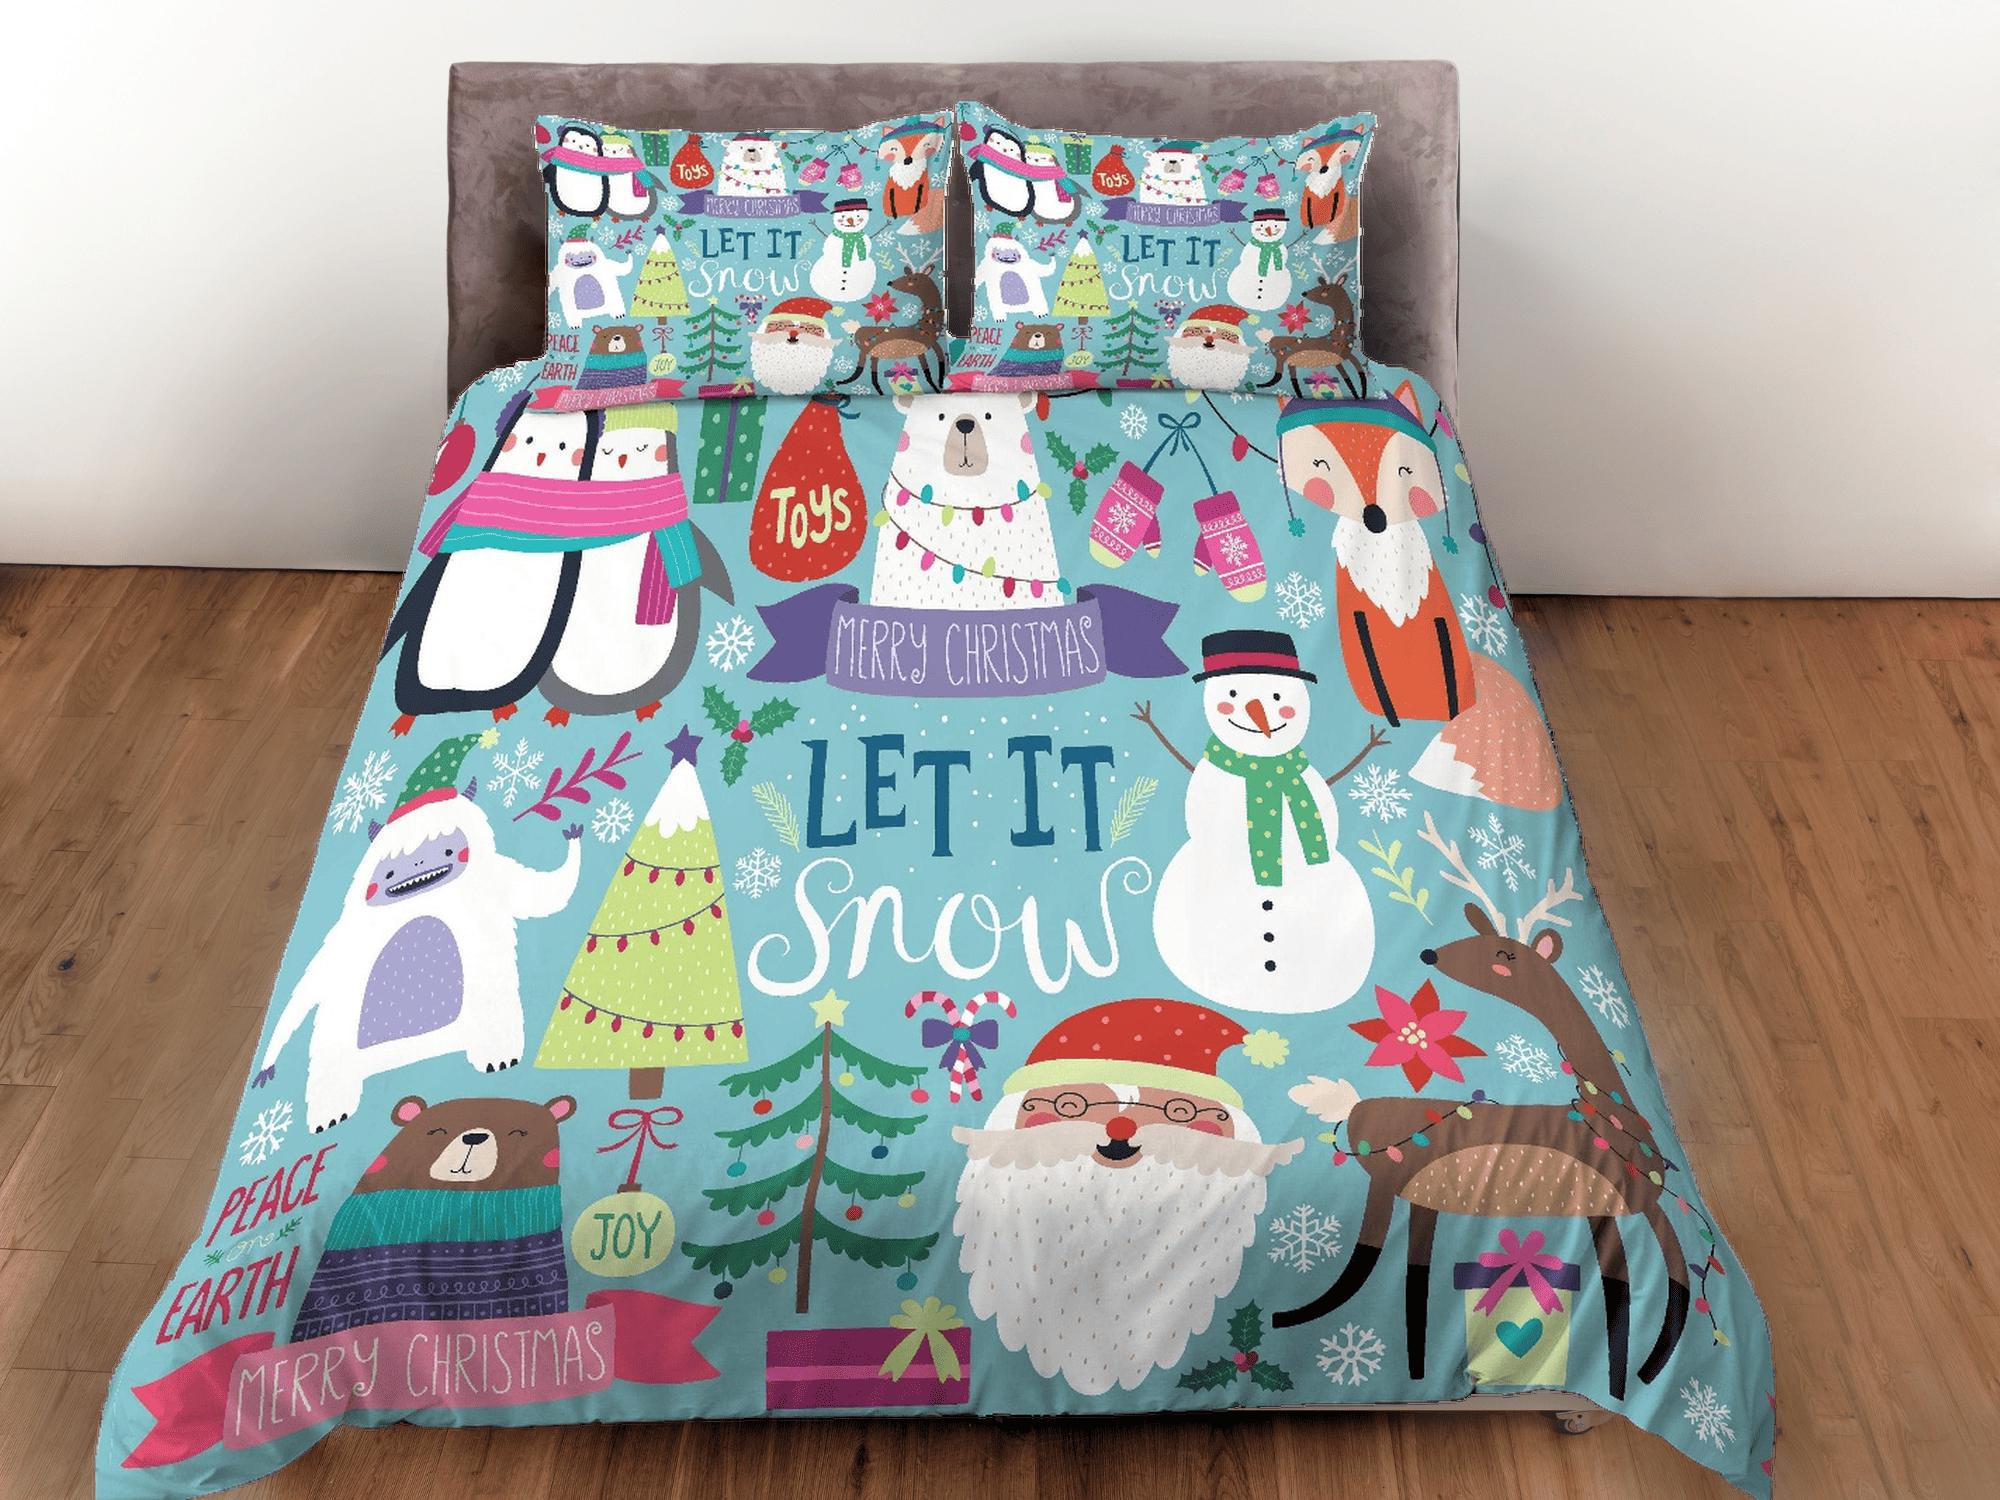 daintyduvet Merry Christmas Duvet Cover Set and Pillows Winter Dorm Bedding Comforter Cover Christmas Gift